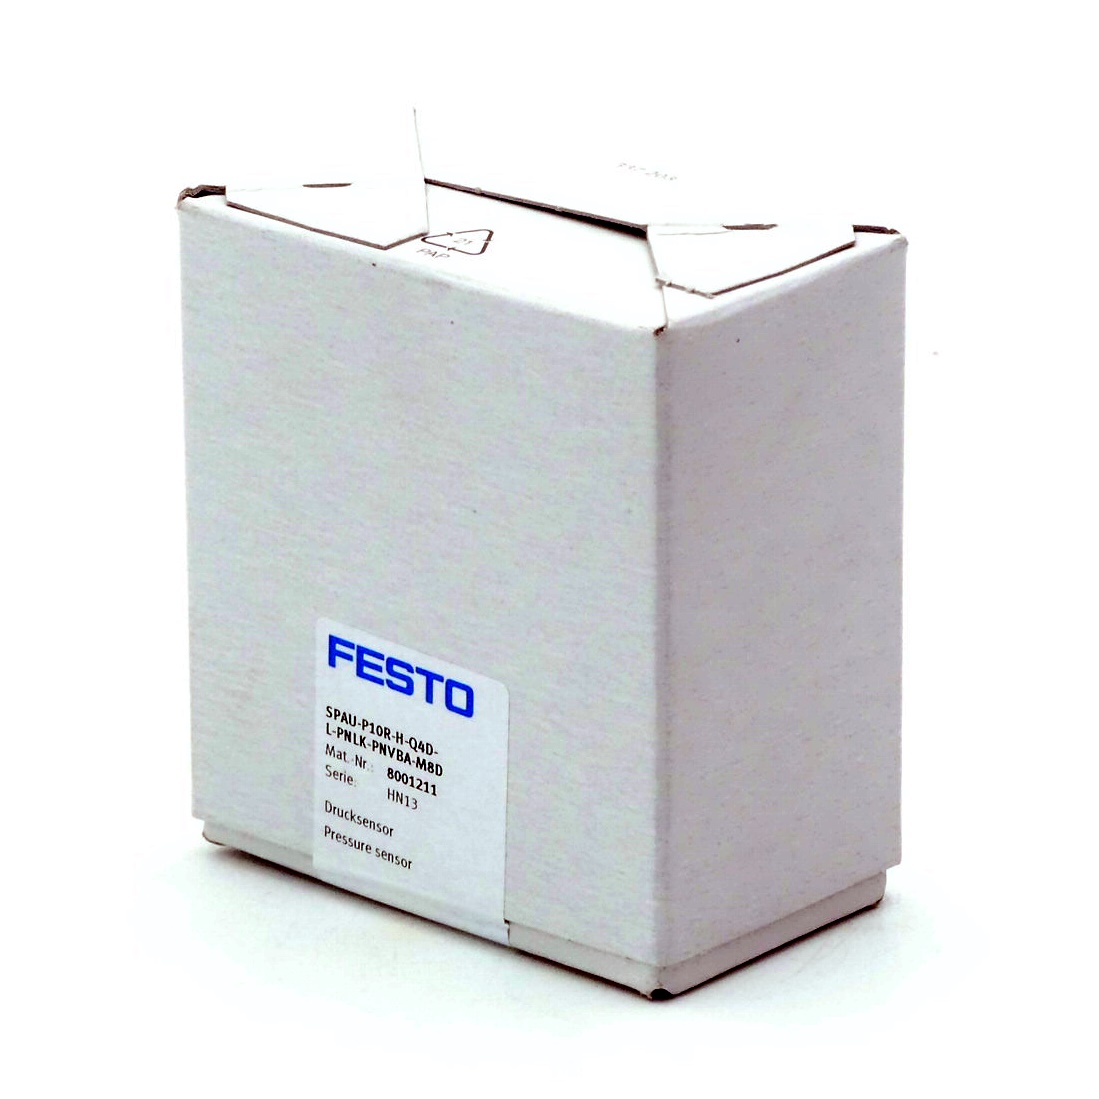 Drucksensor und Drucktransmitter SPAU ohne Display, Festo kaufen - im  Haberkorn Online-Shop